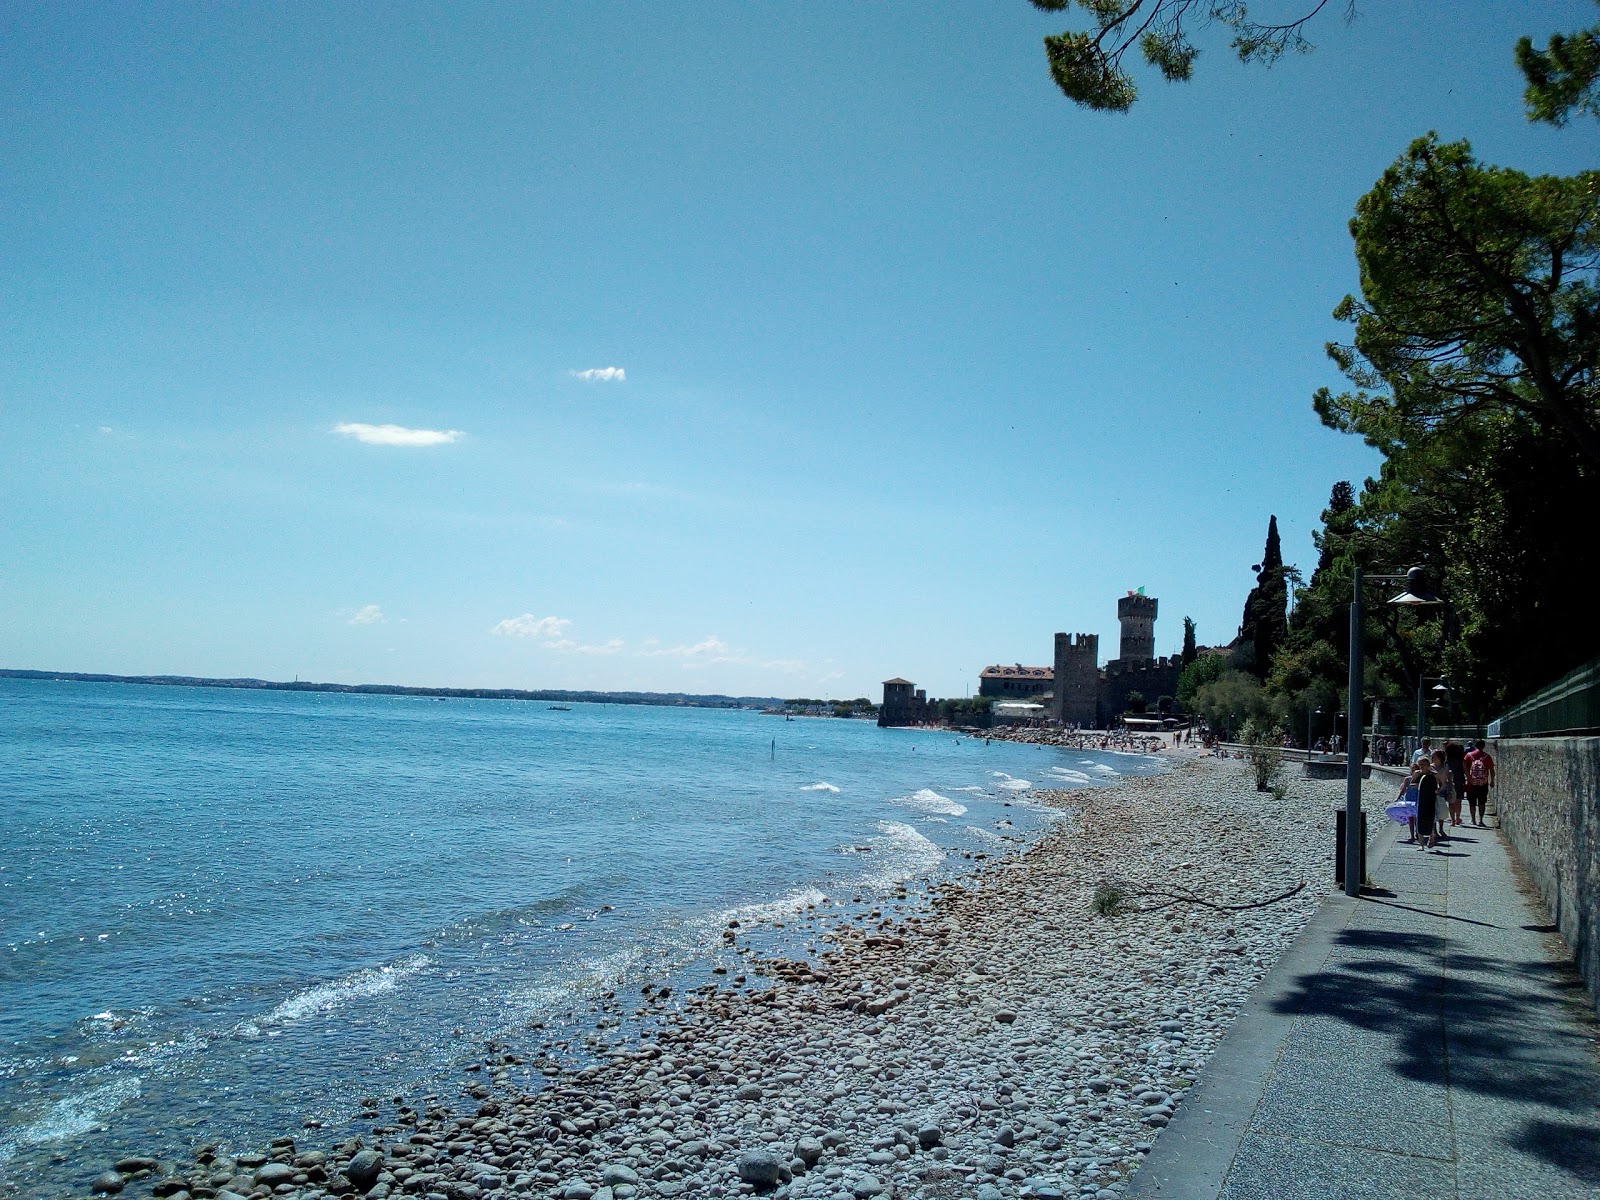 Photo of Spiaggia del Prete and its beautiful scenery